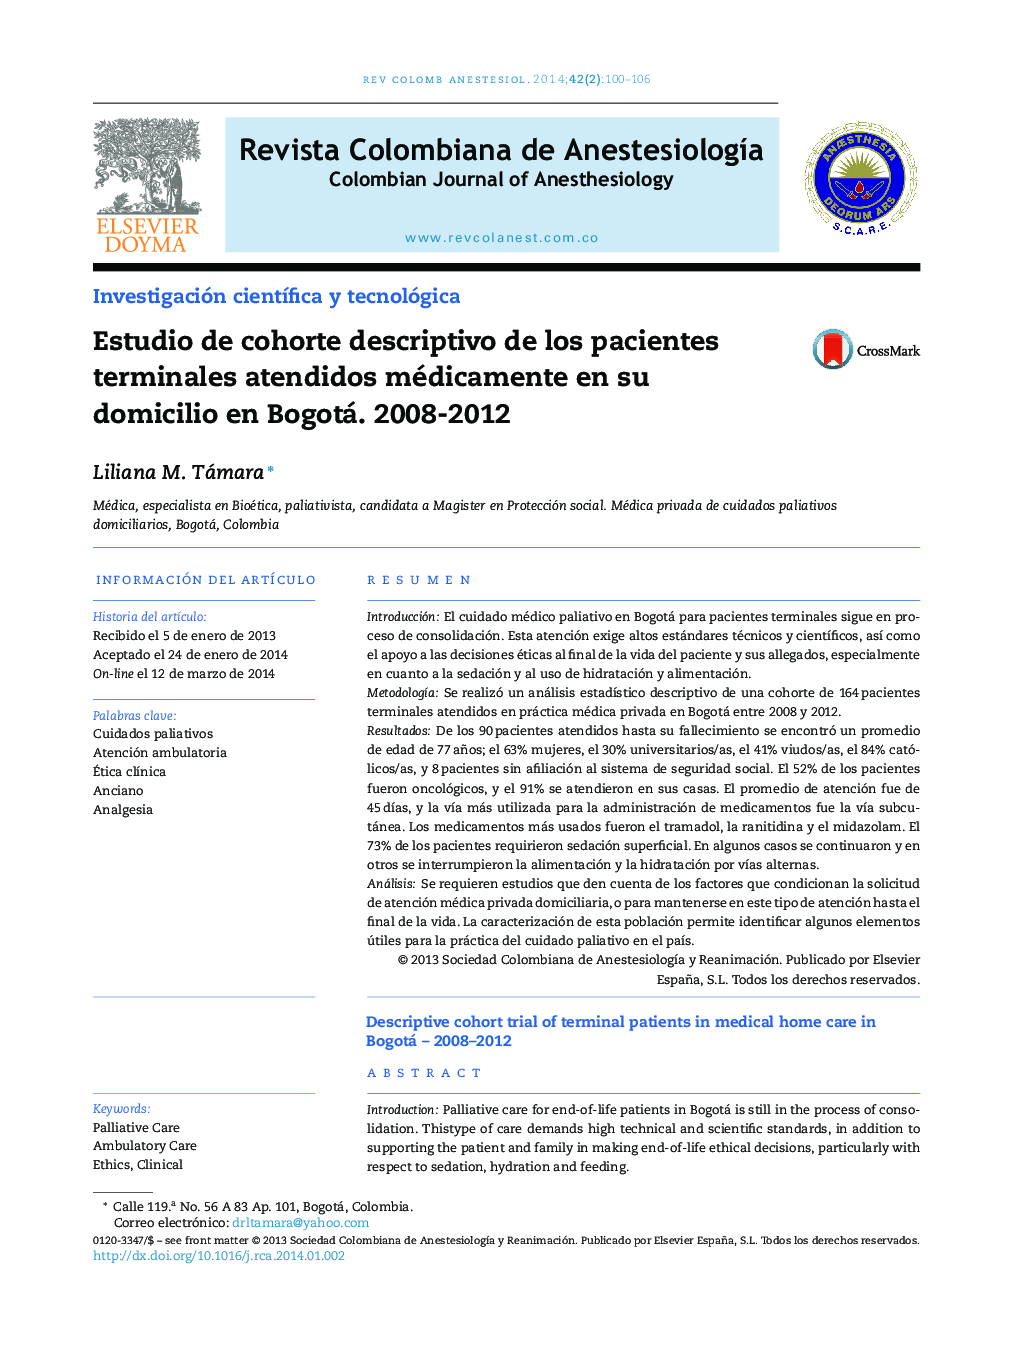 Estudio de cohorte descriptivo de los pacientes terminales atendidos médicamente en su domicilio en Bogotá. 2008-2012